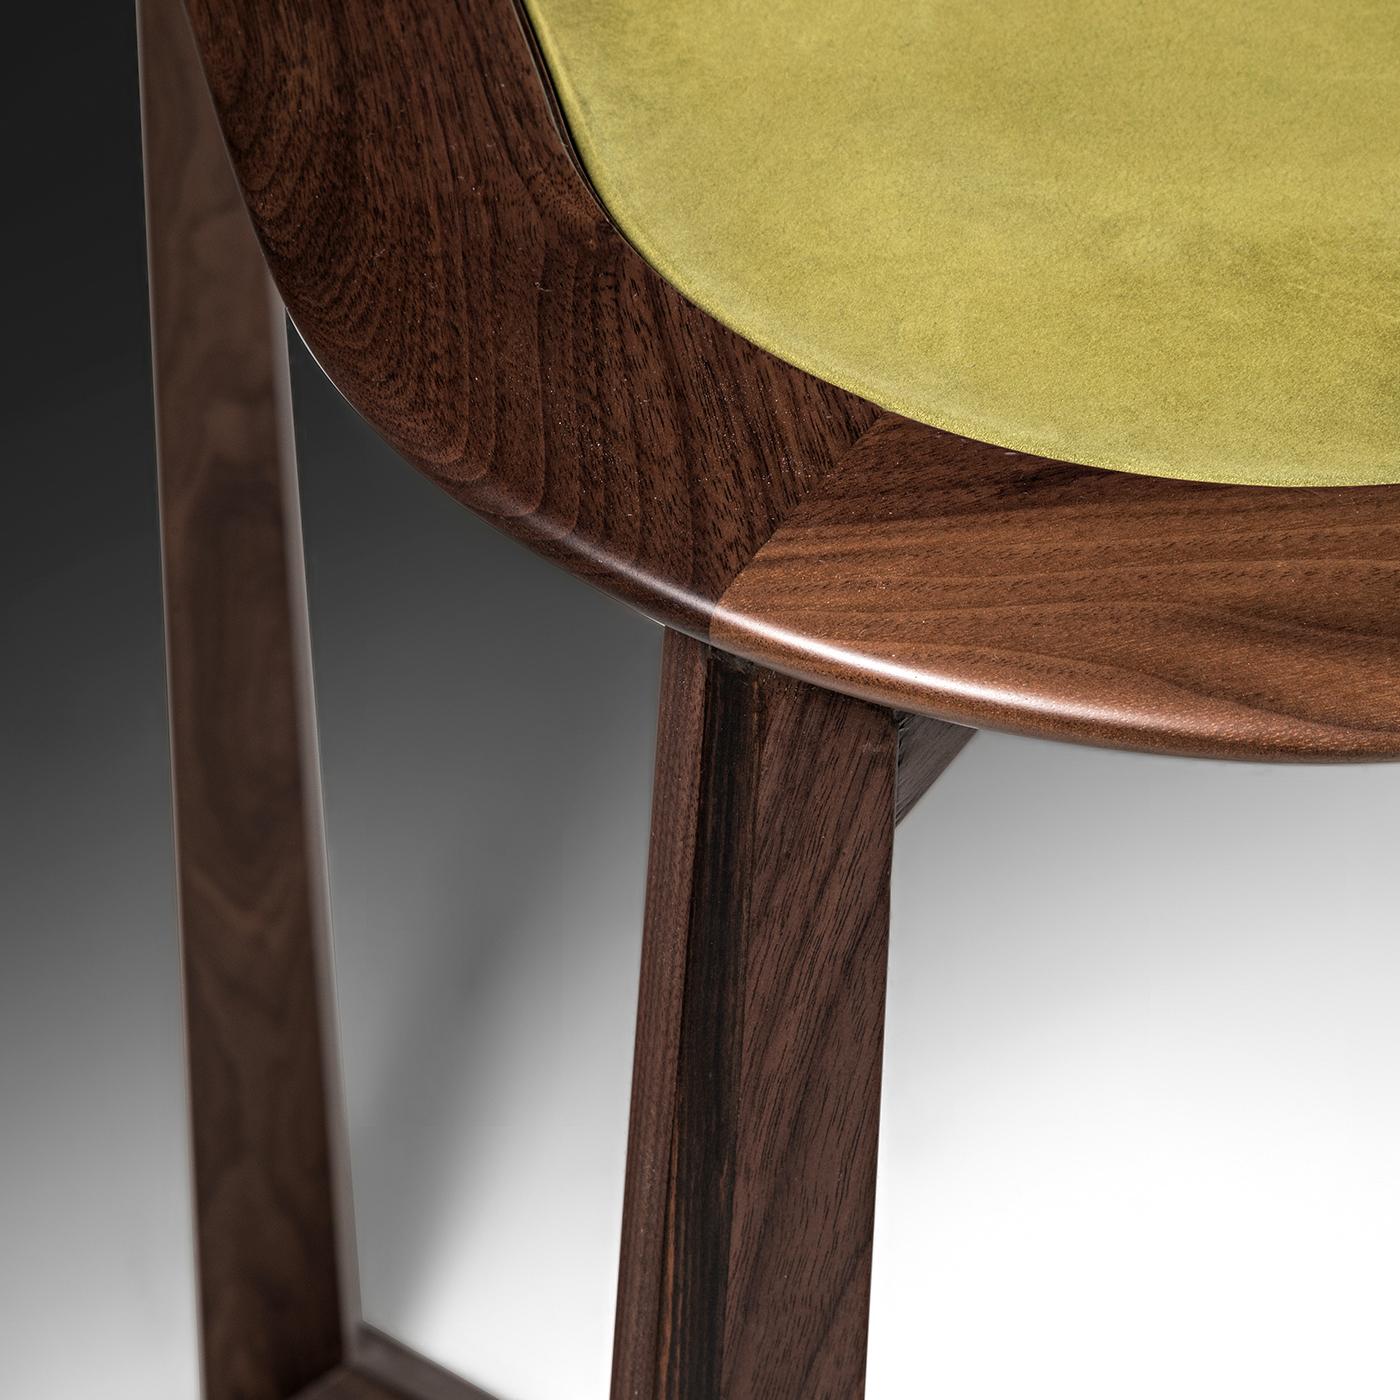 Der mit einer praktischen Schublade ausgestattete Schreibtisch aus Canaletto-Nussbaum und Ebenholz zeichnet sich durch eine dynamische Silhouette mit ausgeprägtem skulpturalem Flair aus. Die stromlinienförmigen Beine verlängern sich an der Basis und